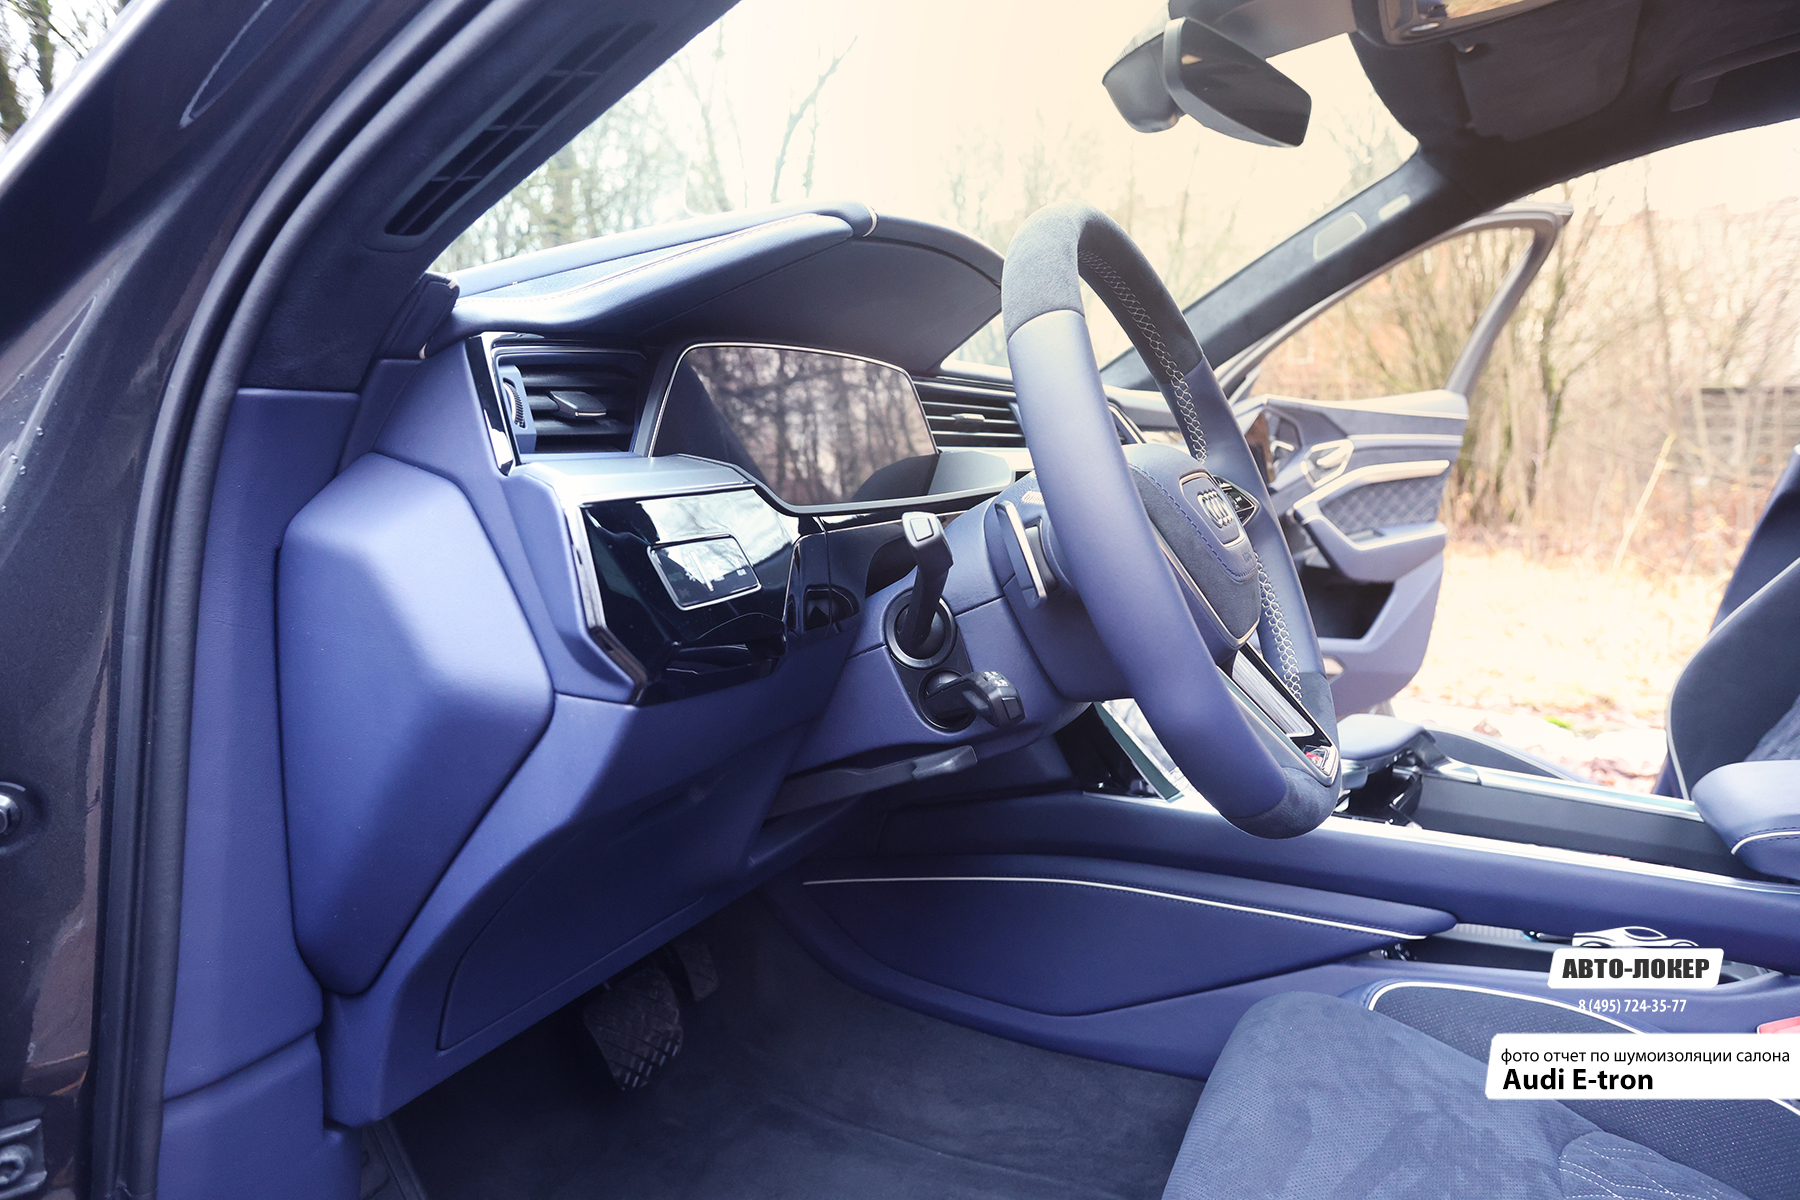 Перетяжка руля и рулевой колонки салона Audi E-tron в натуральную кожу